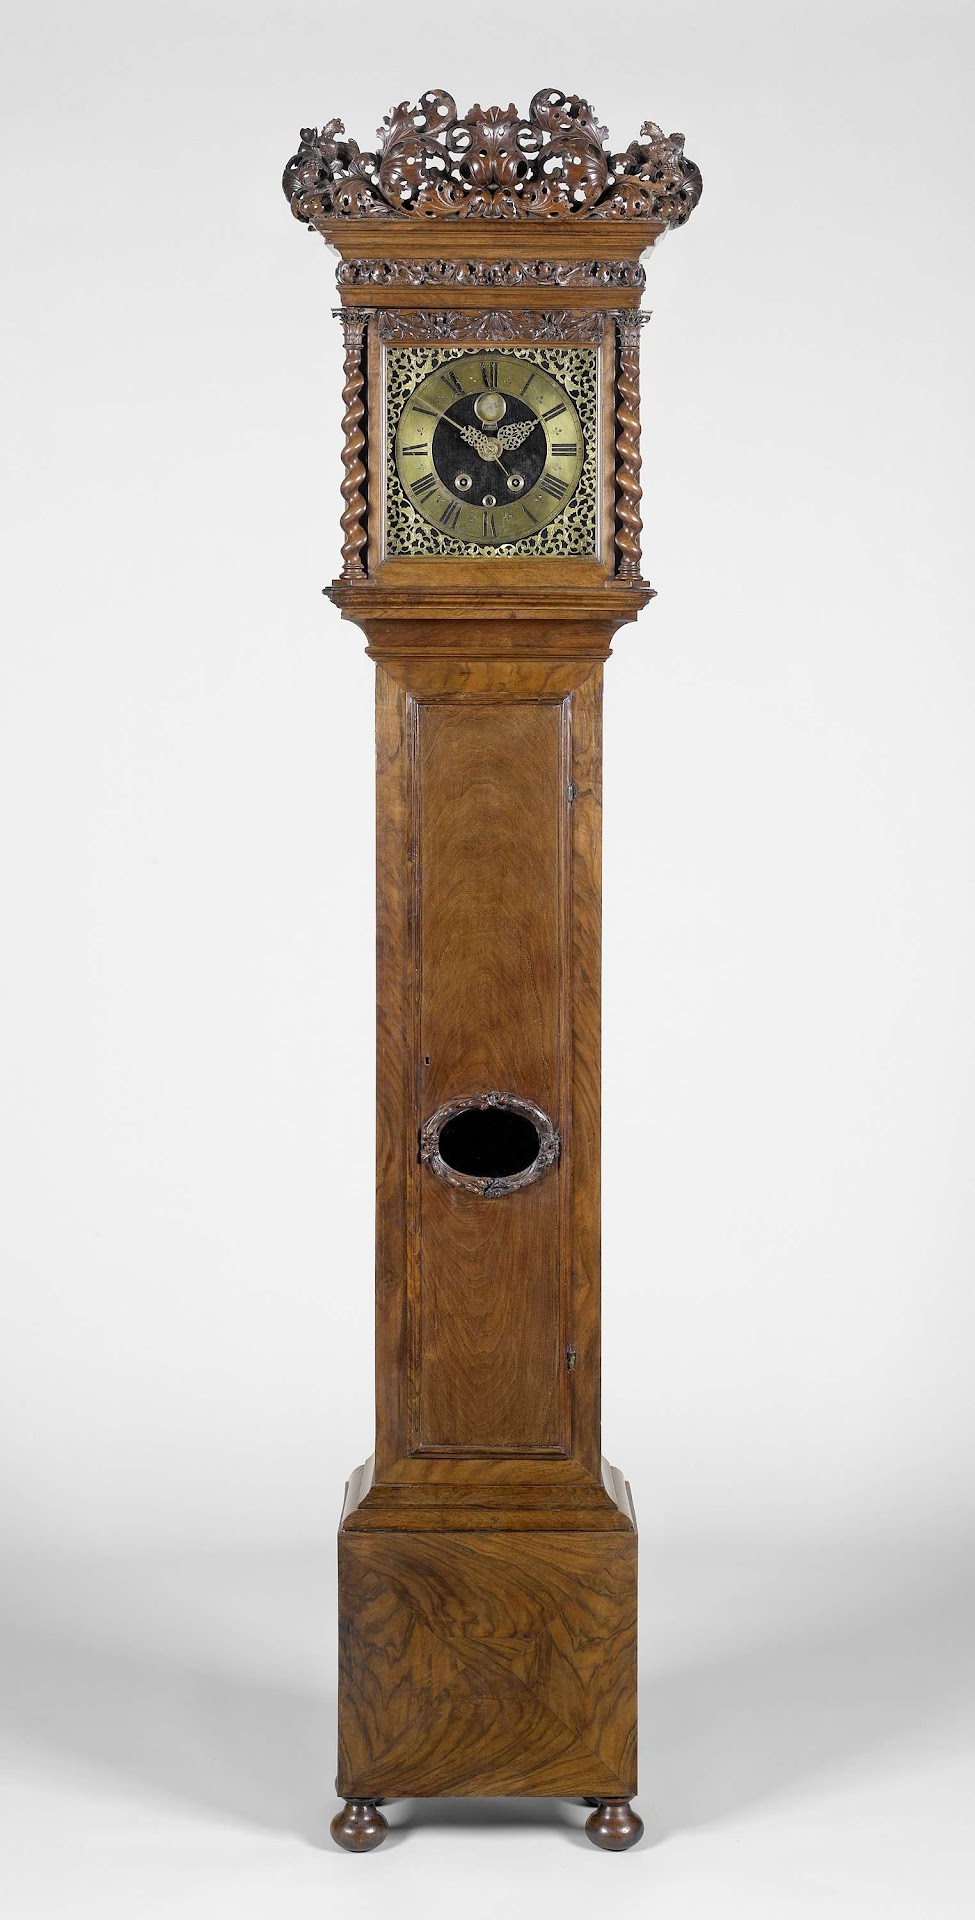 Staande klok, anoniem, ca. 1690 - ca. 1695 - Rijksmuseum